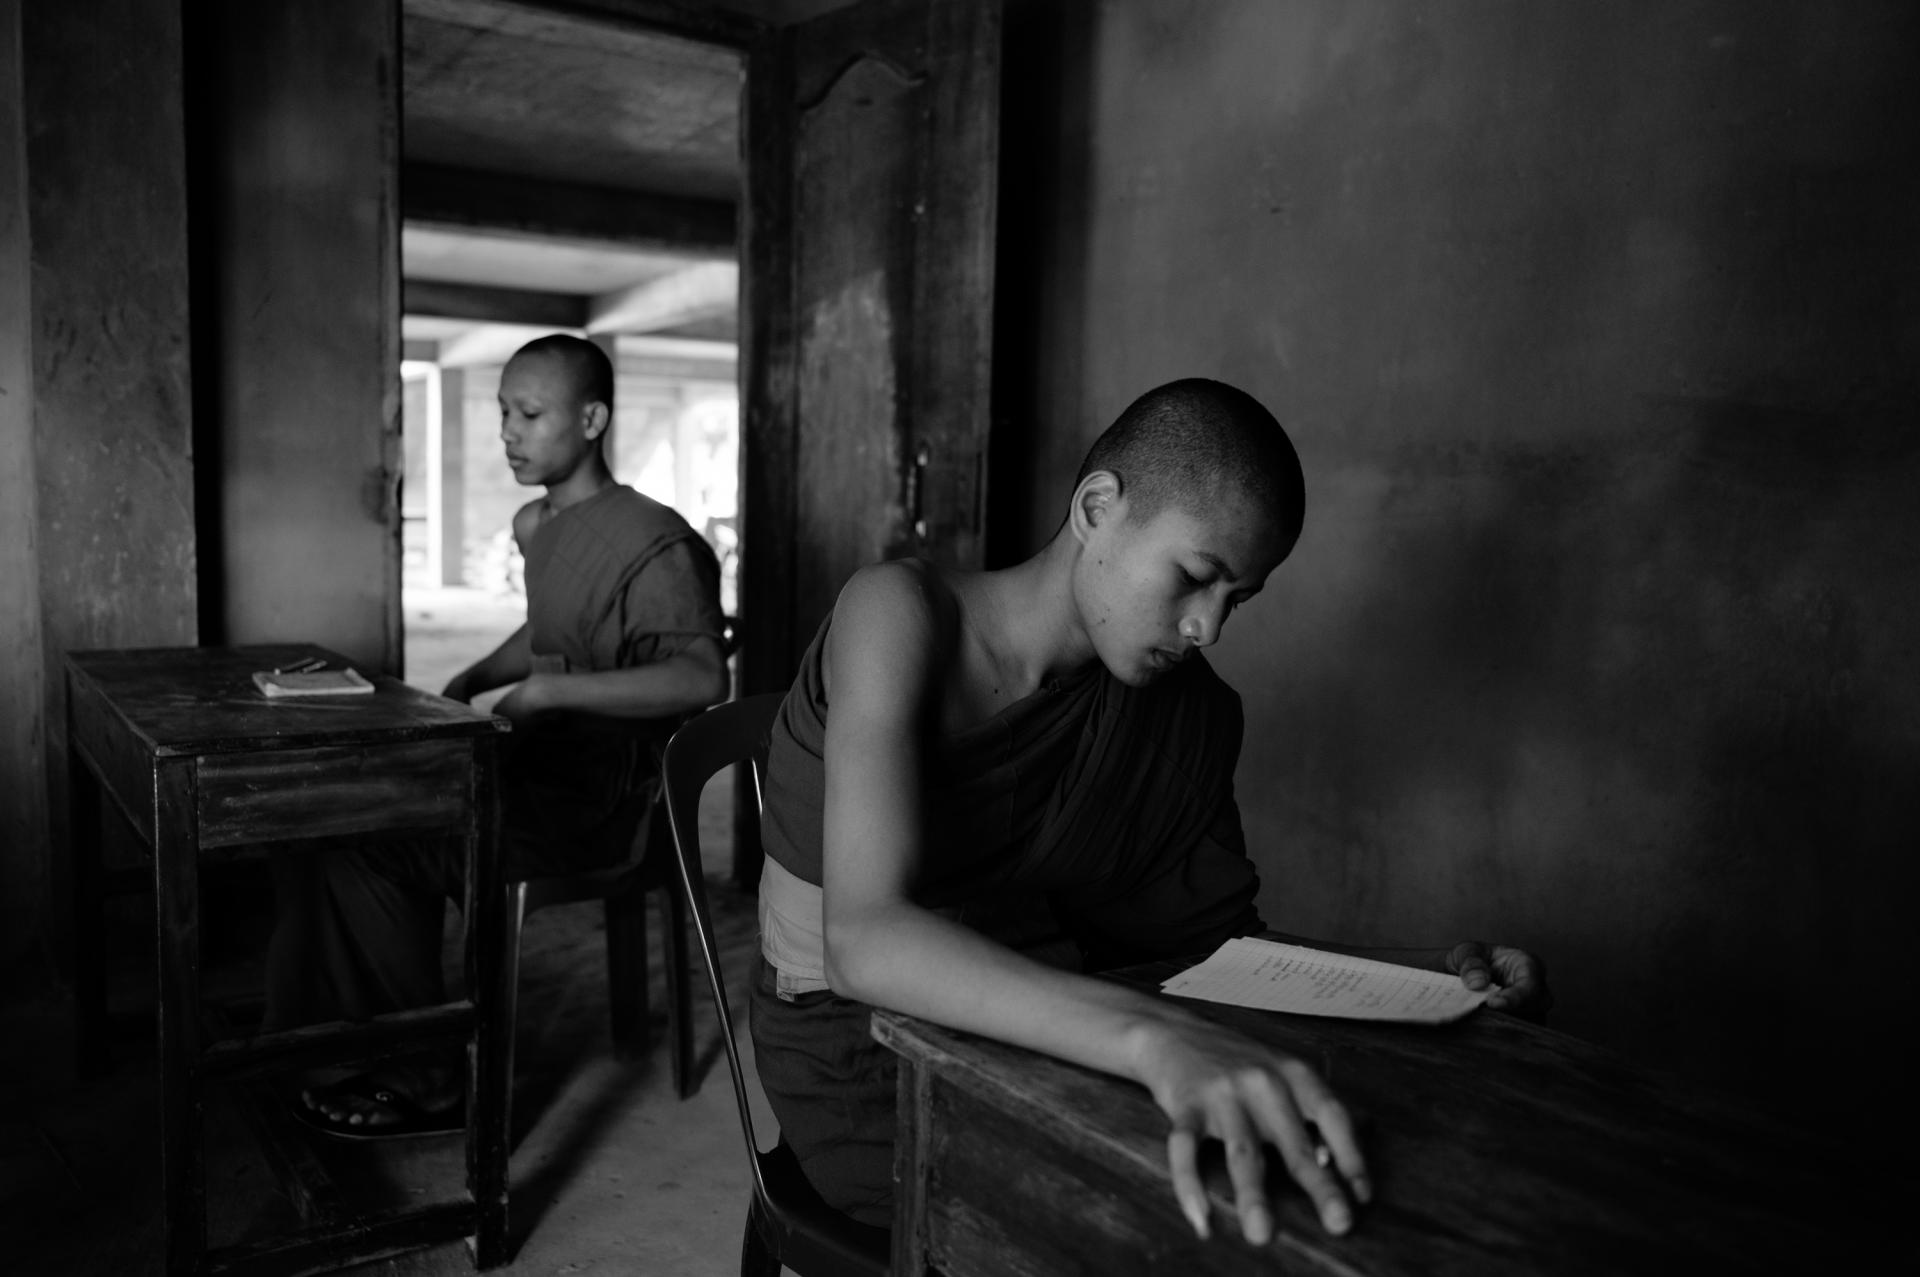 New York Photography Awards Winner - Theravada Buddhist Monastery